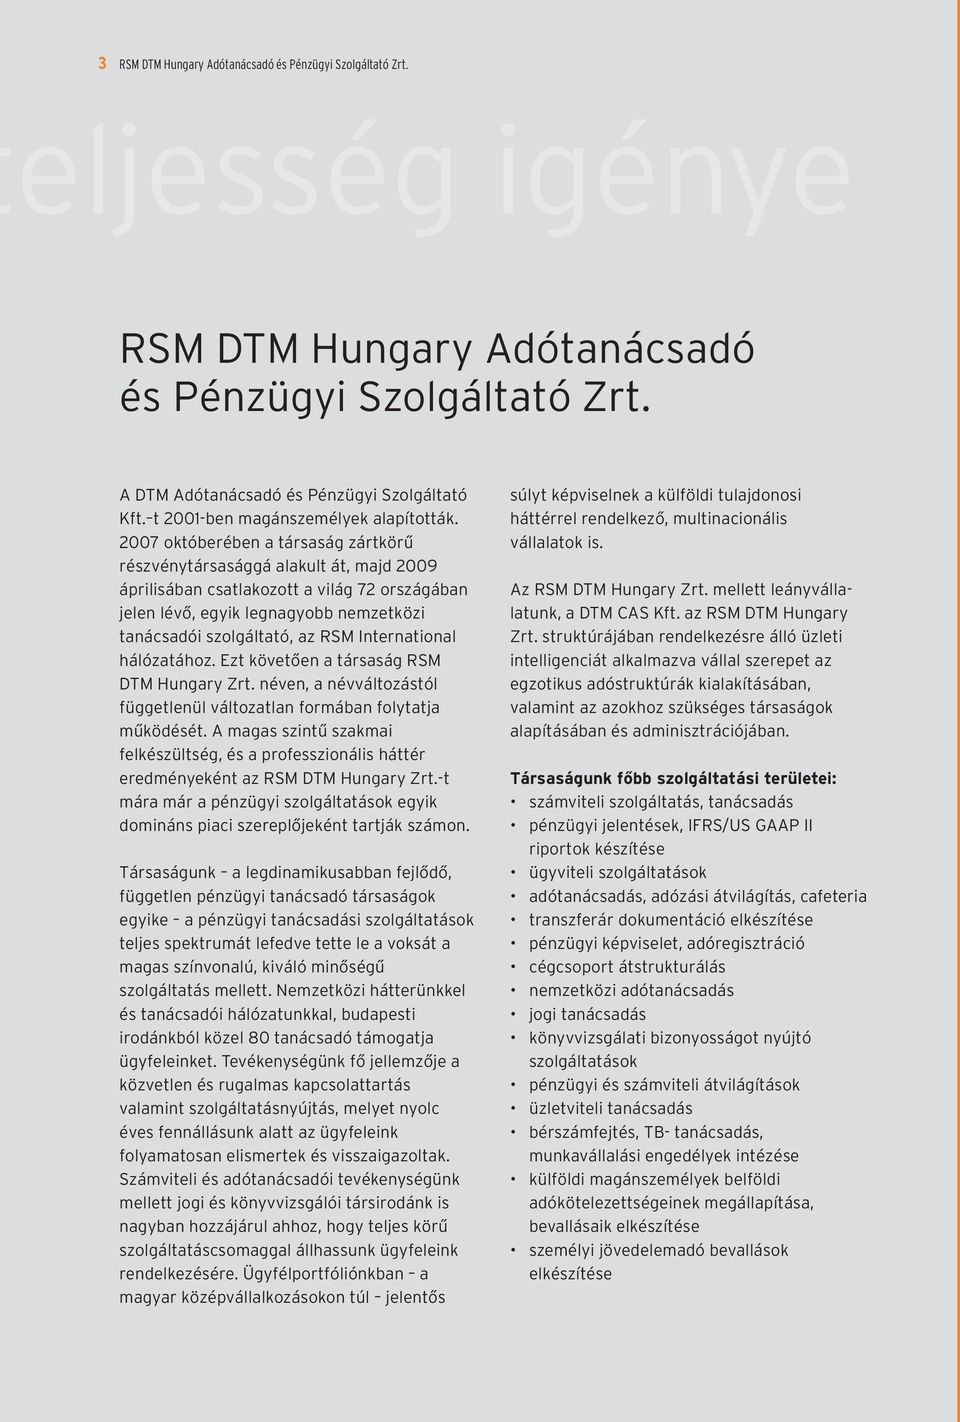 International hálózatához. Ezt követõen a társaság RSM DTM Hungary Zrt. néven, a névváltozástól függetlenül változatlan formában folytatja mûködését.